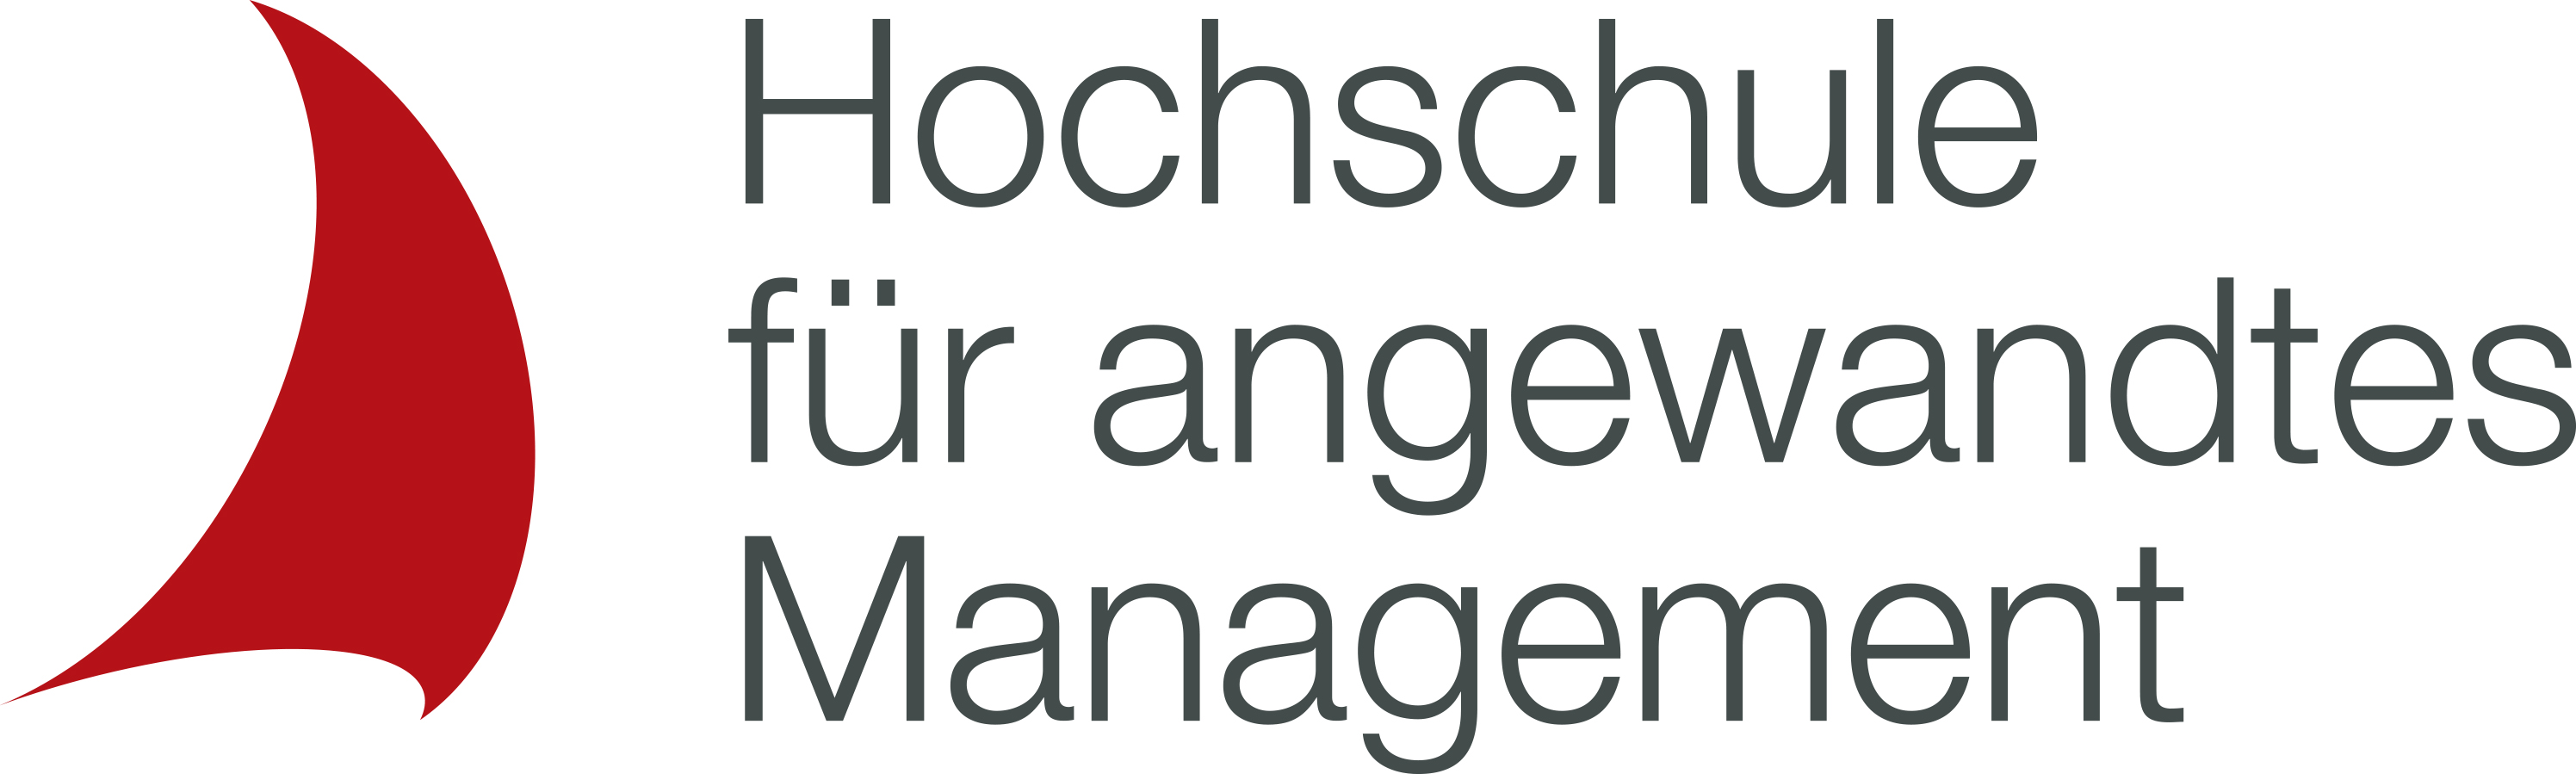 Hochschule für angewandtes Management - Studienort Köln Logo